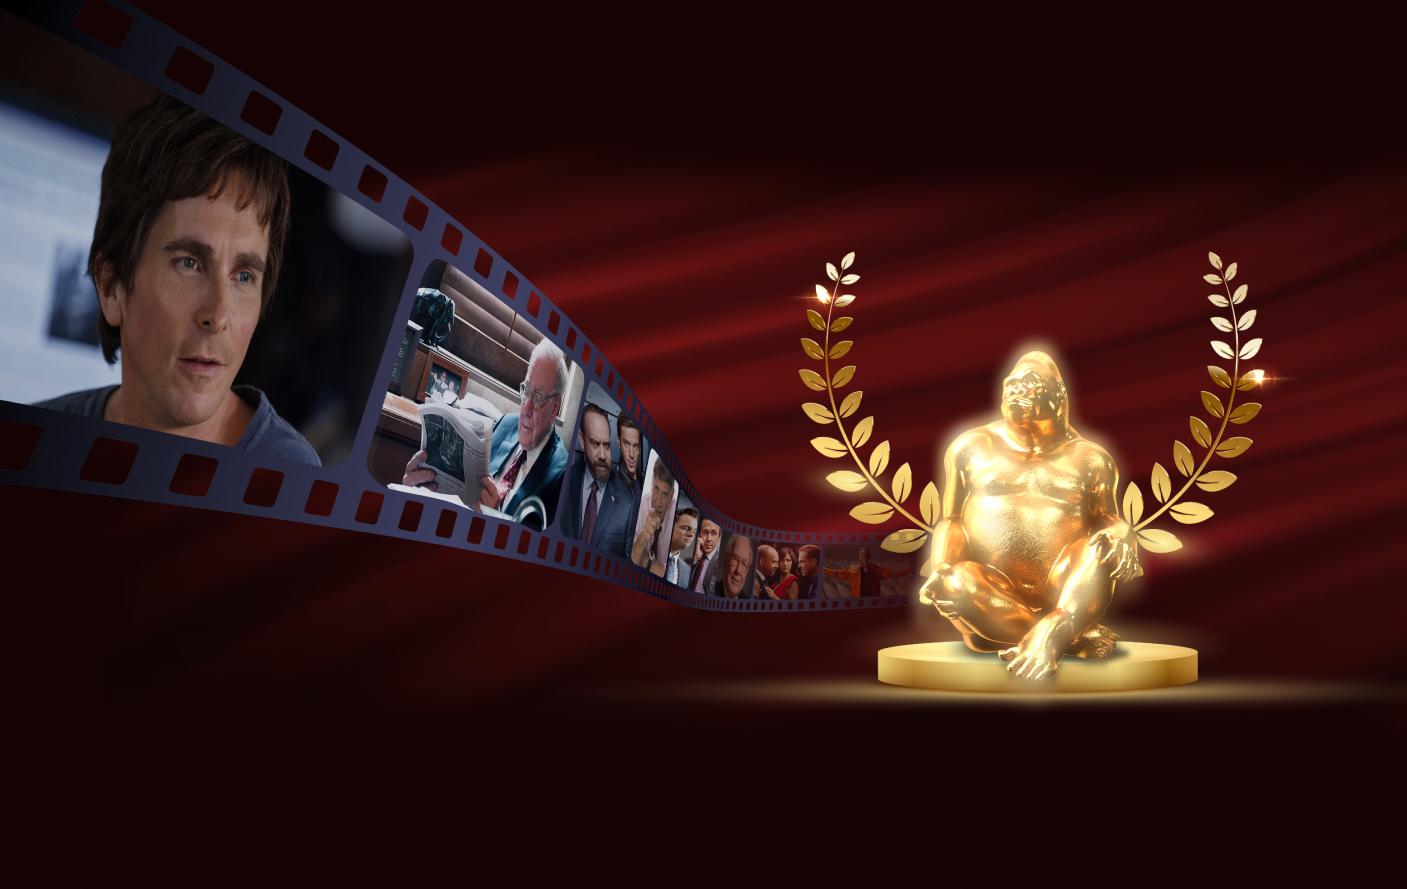 Imagem com fundo vermelho com rolo de filme a esquerda mostrando filmes sobre investimento e estatueta de gorila de ouro a direita.